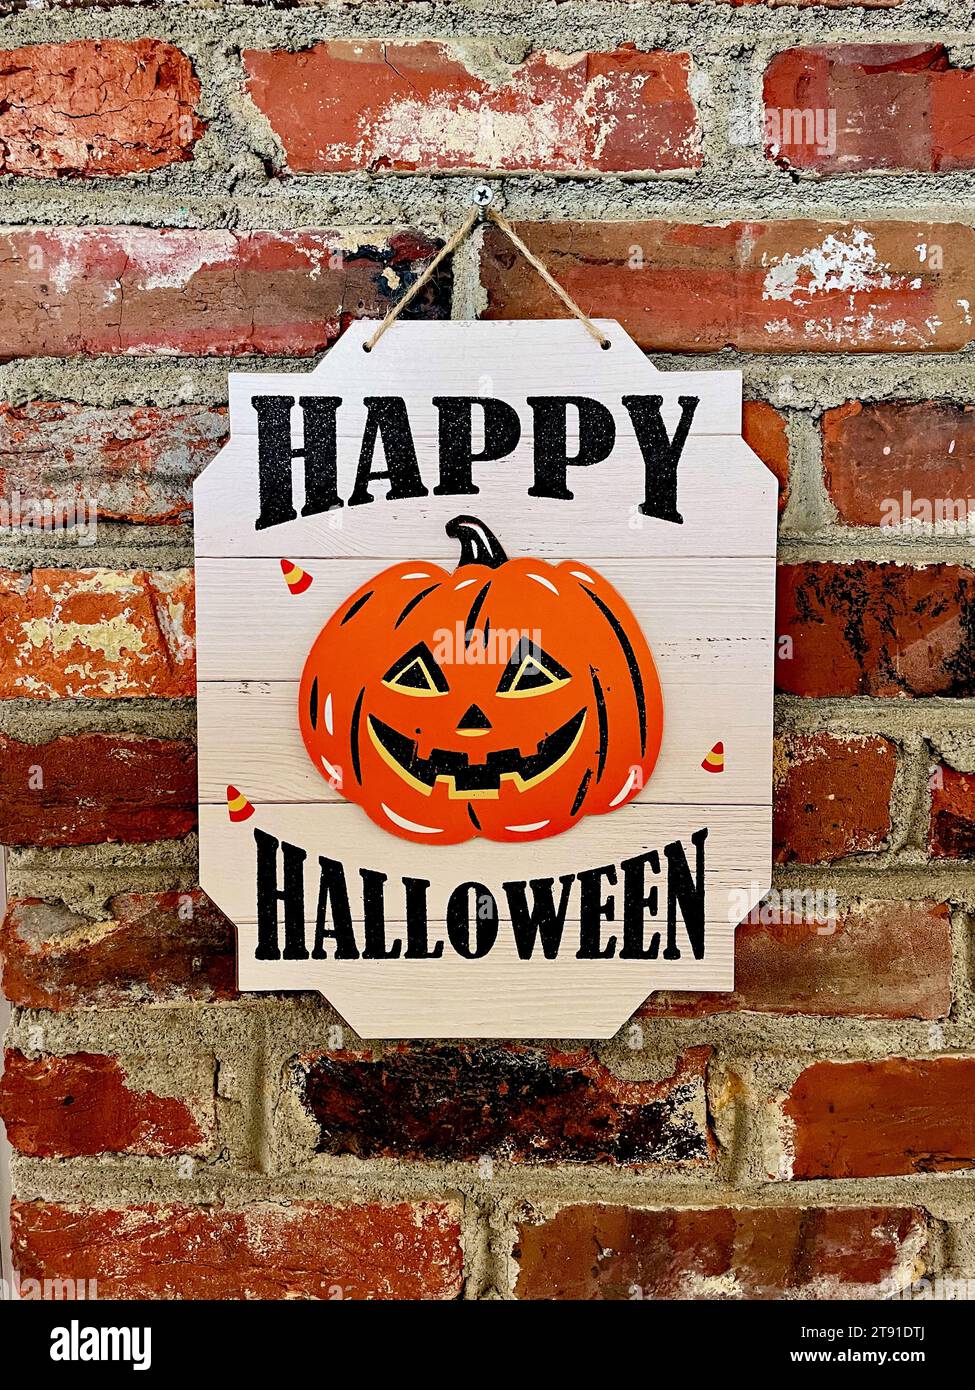 Un signe «Happy Halloween» avec une citrouille souriante accroche sur le mur d'une maison. Banque D'Images